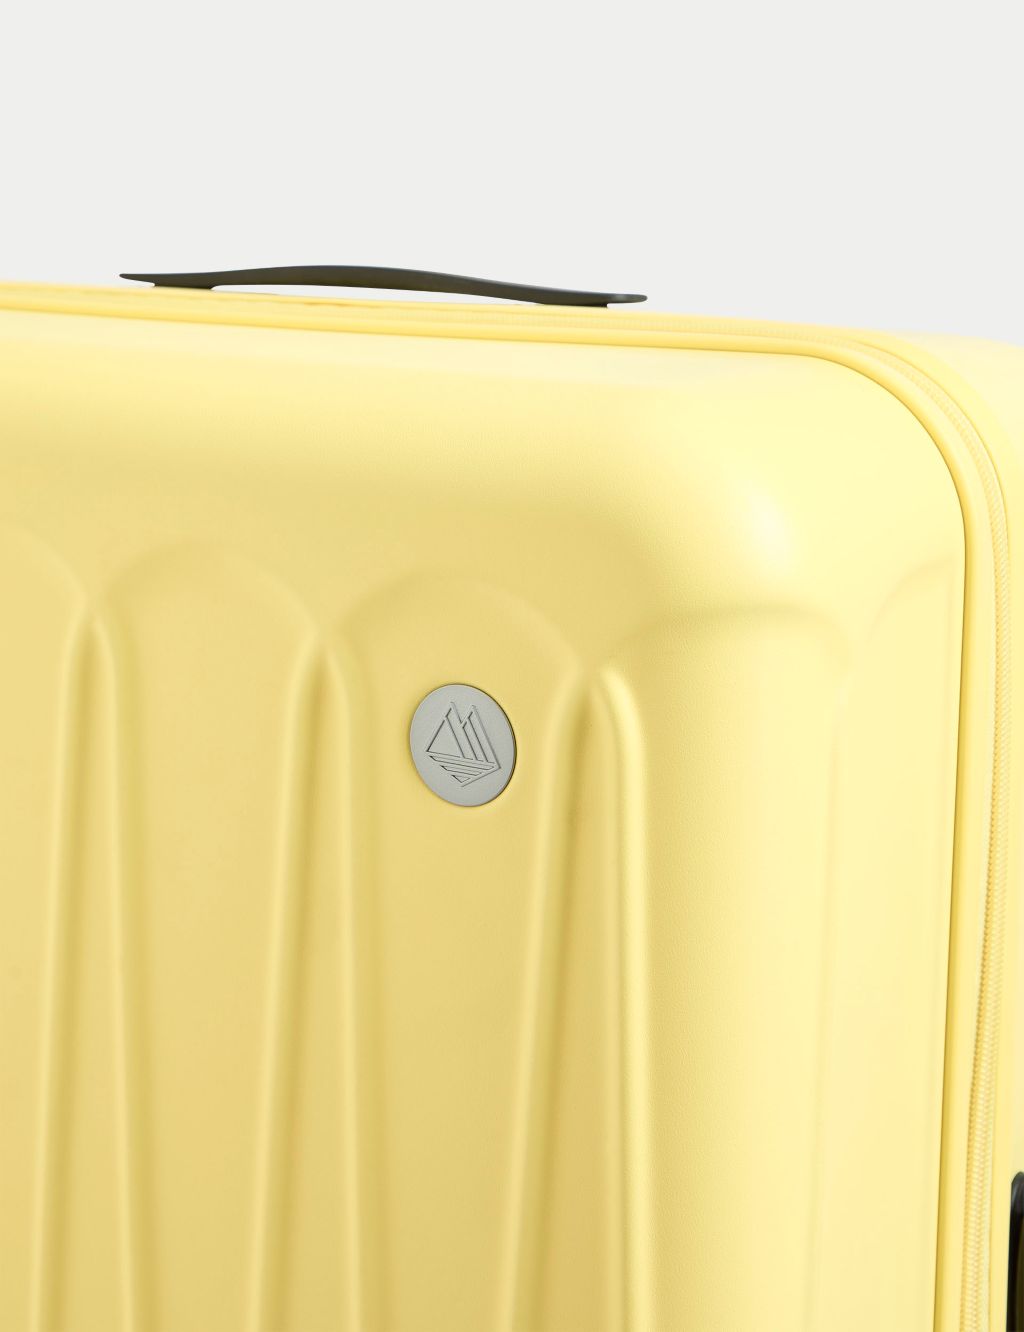 Amalfi 4 Wheel Hard Shell Large Suitcase 7 of 10